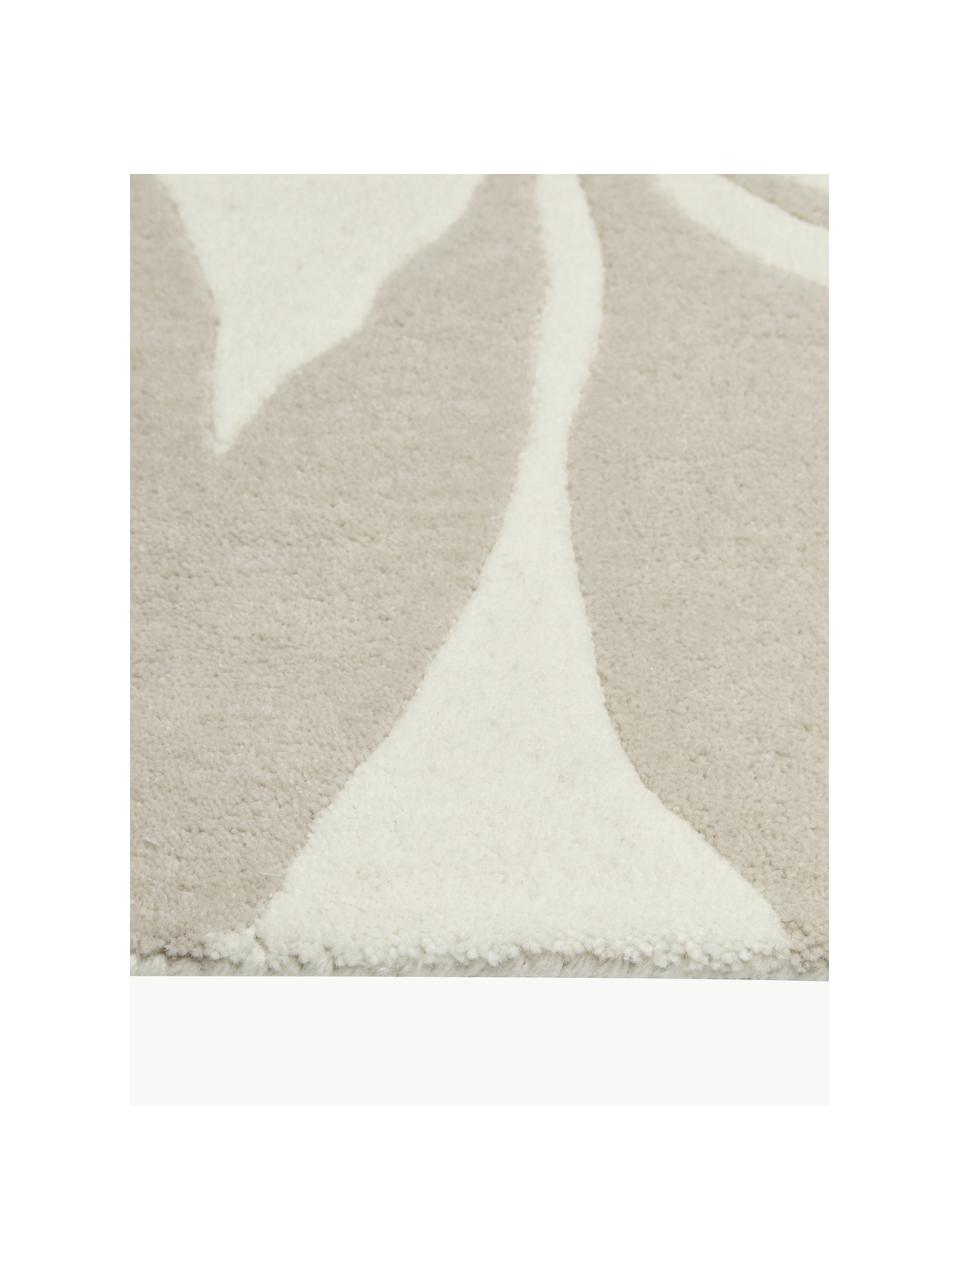 Ručně tkaný vlněný koberec Lando, 100 % vlna

V prvních týdnech používání vlněných koberců se může objevit charakteristický jev uvolňování vláken, který po několika týdnech používání ustane., Béžová, krémově bílá, Š 80 cm, D 150 cm (velikost XS)